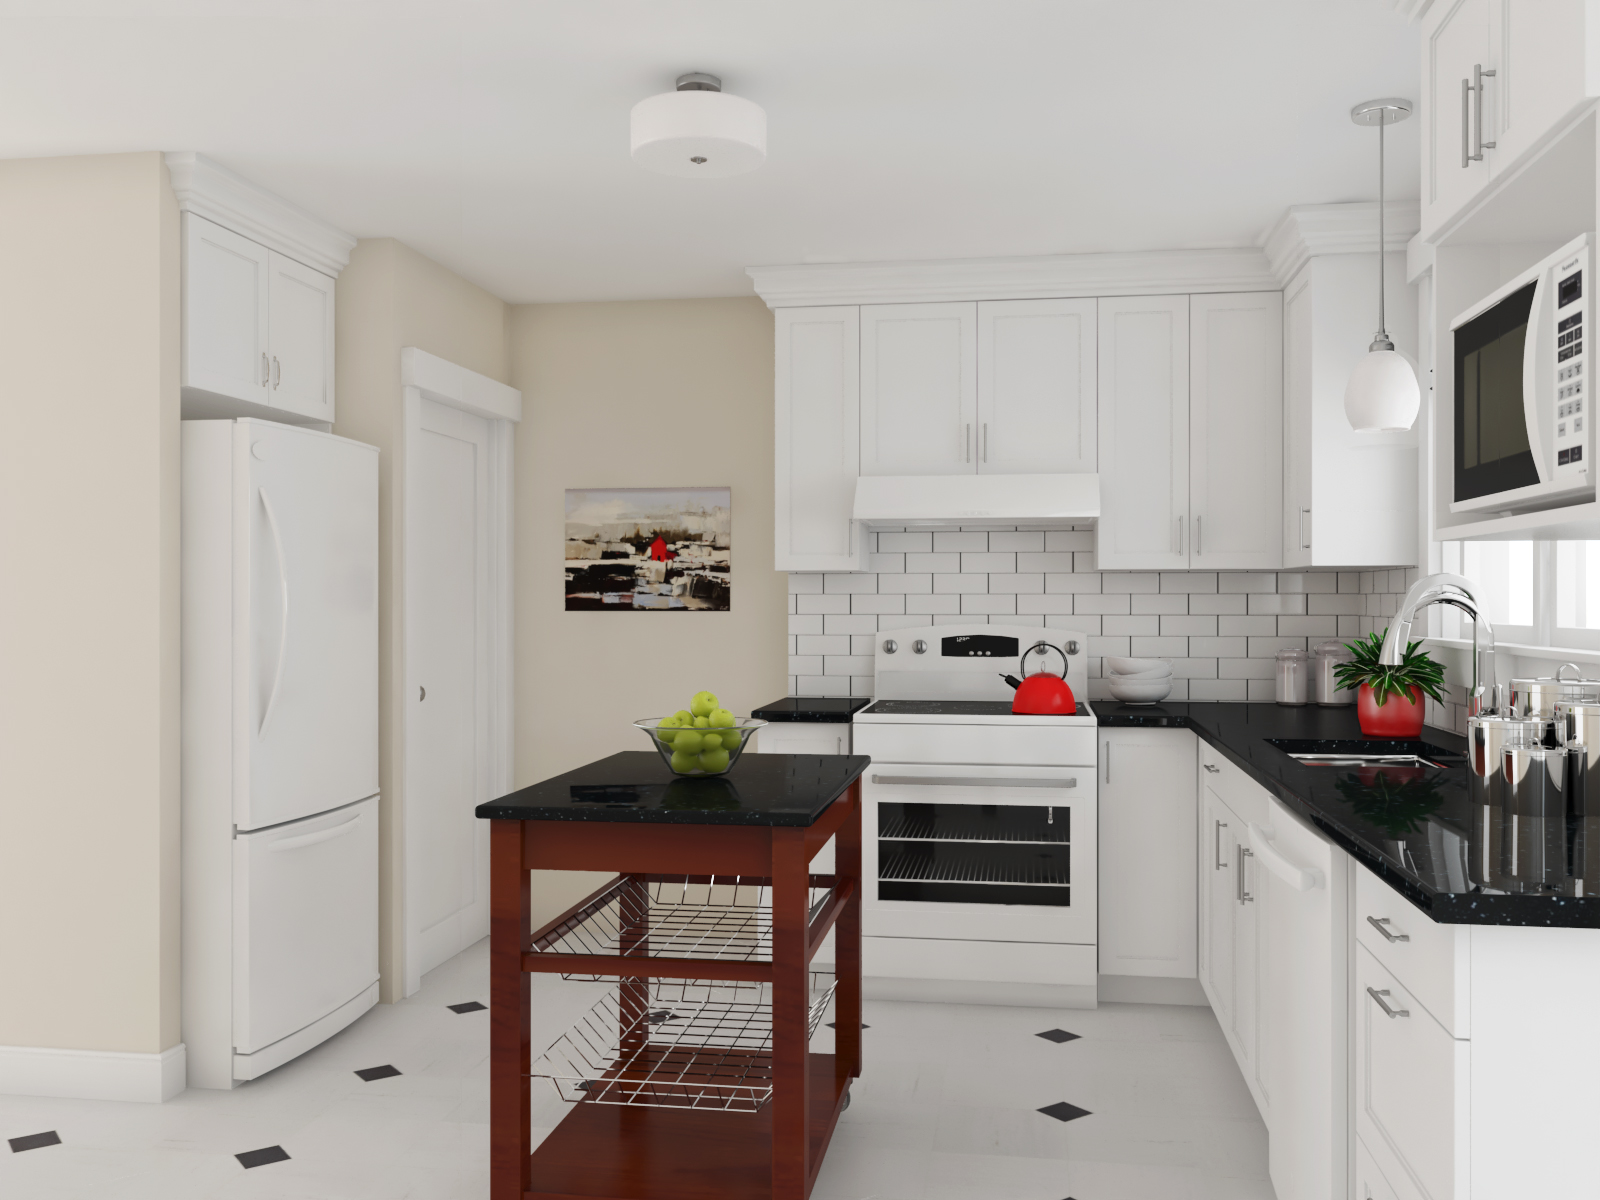 North End, Halifax – Kitchen Renovation